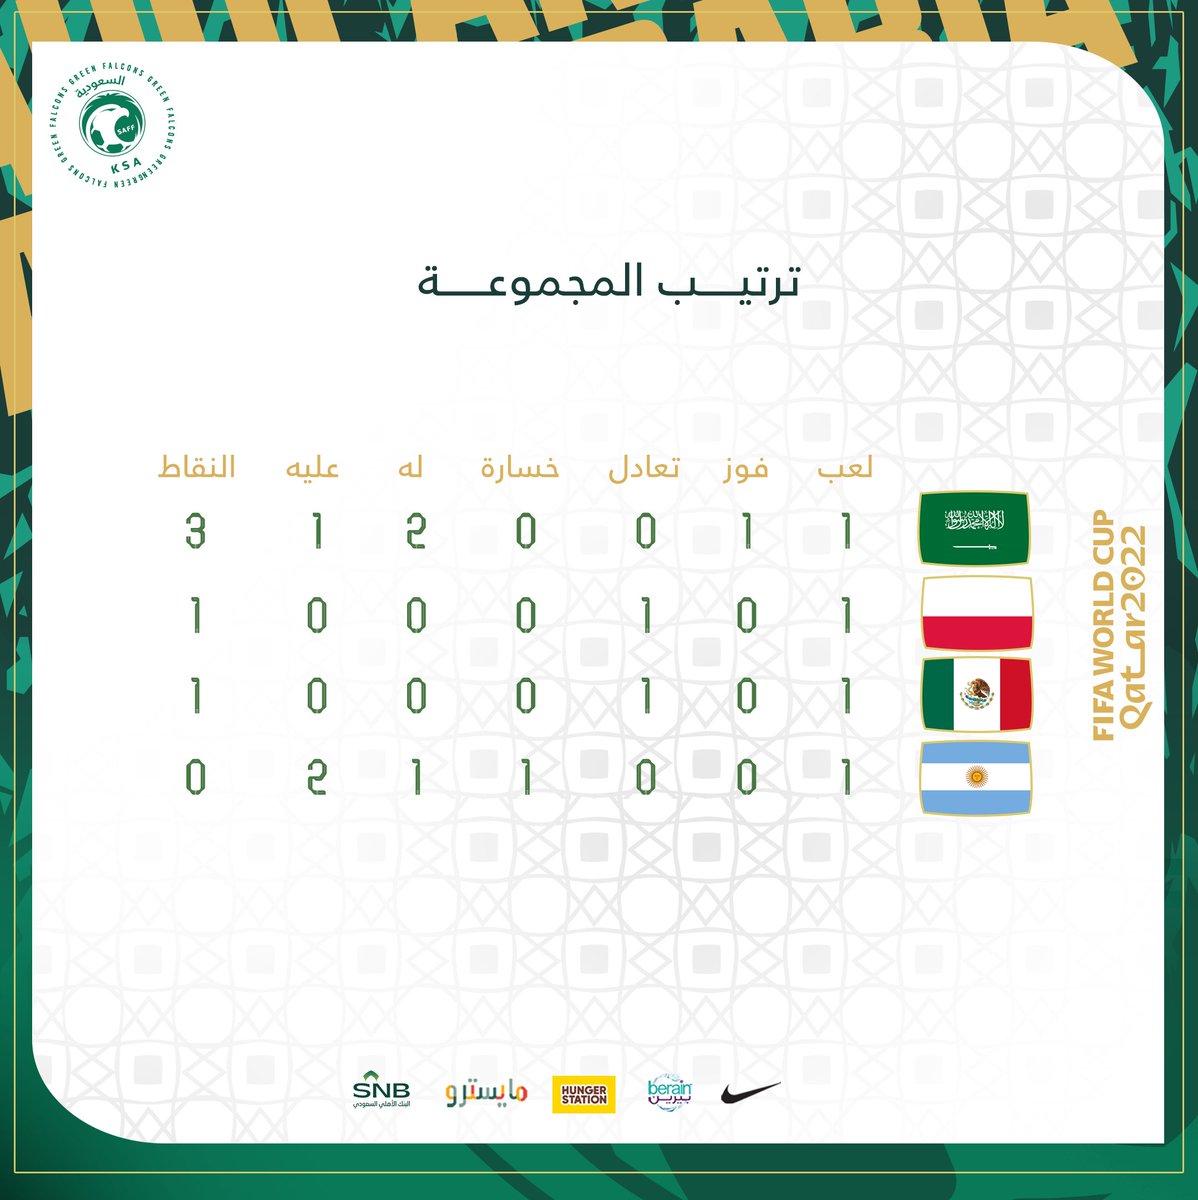 ترتيب المنتخب السعودي